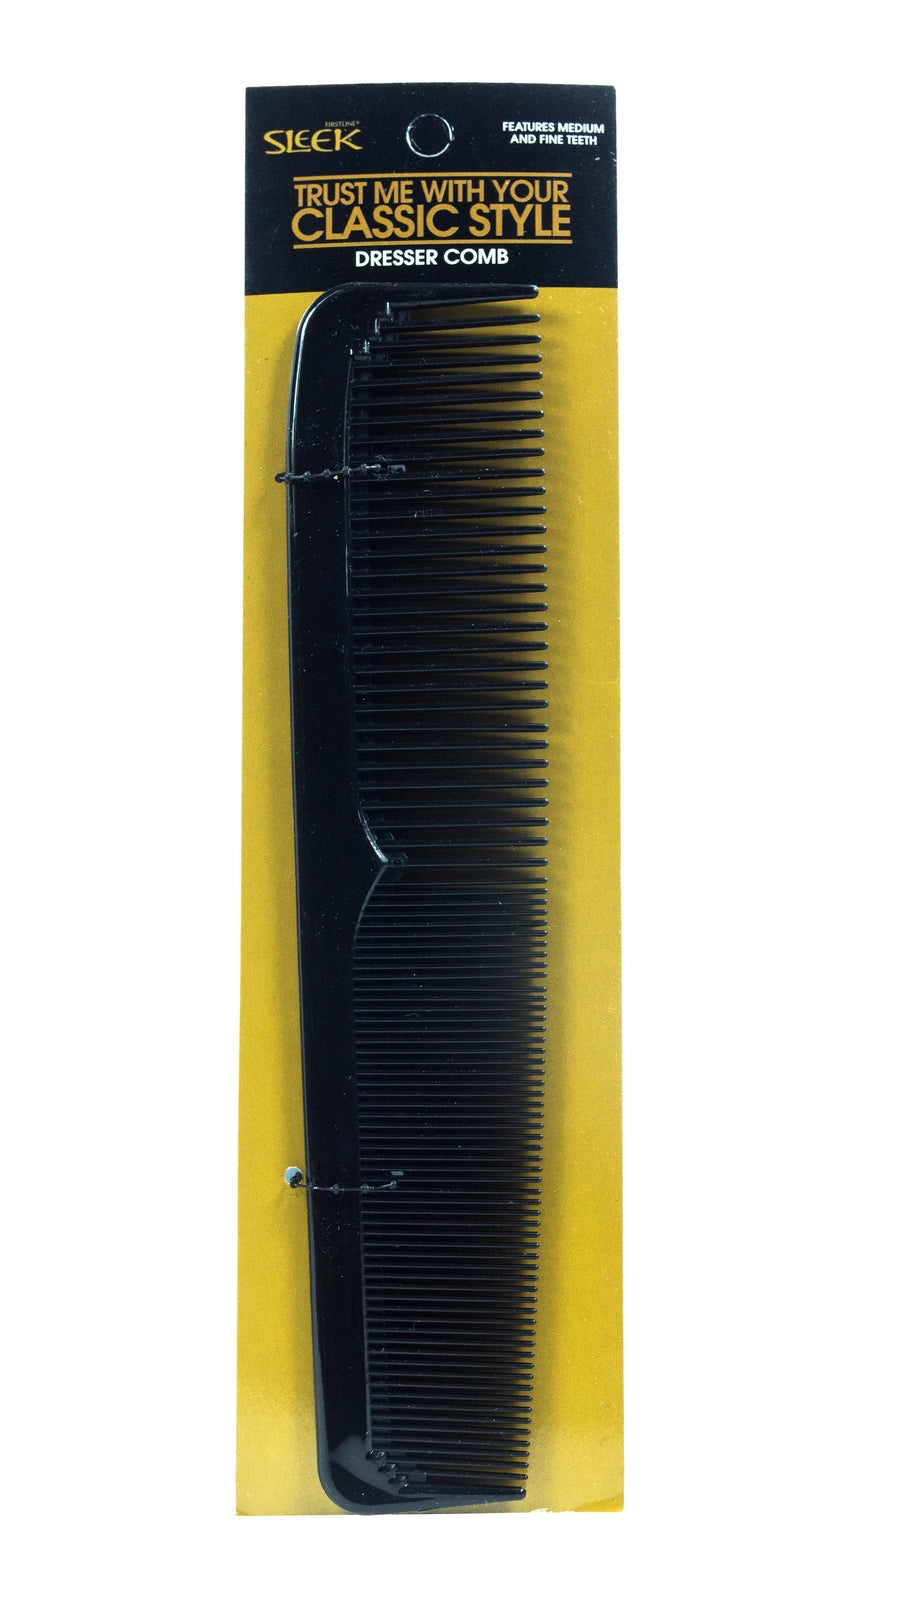 Black Sleek® Dresser Comb in brand packaging